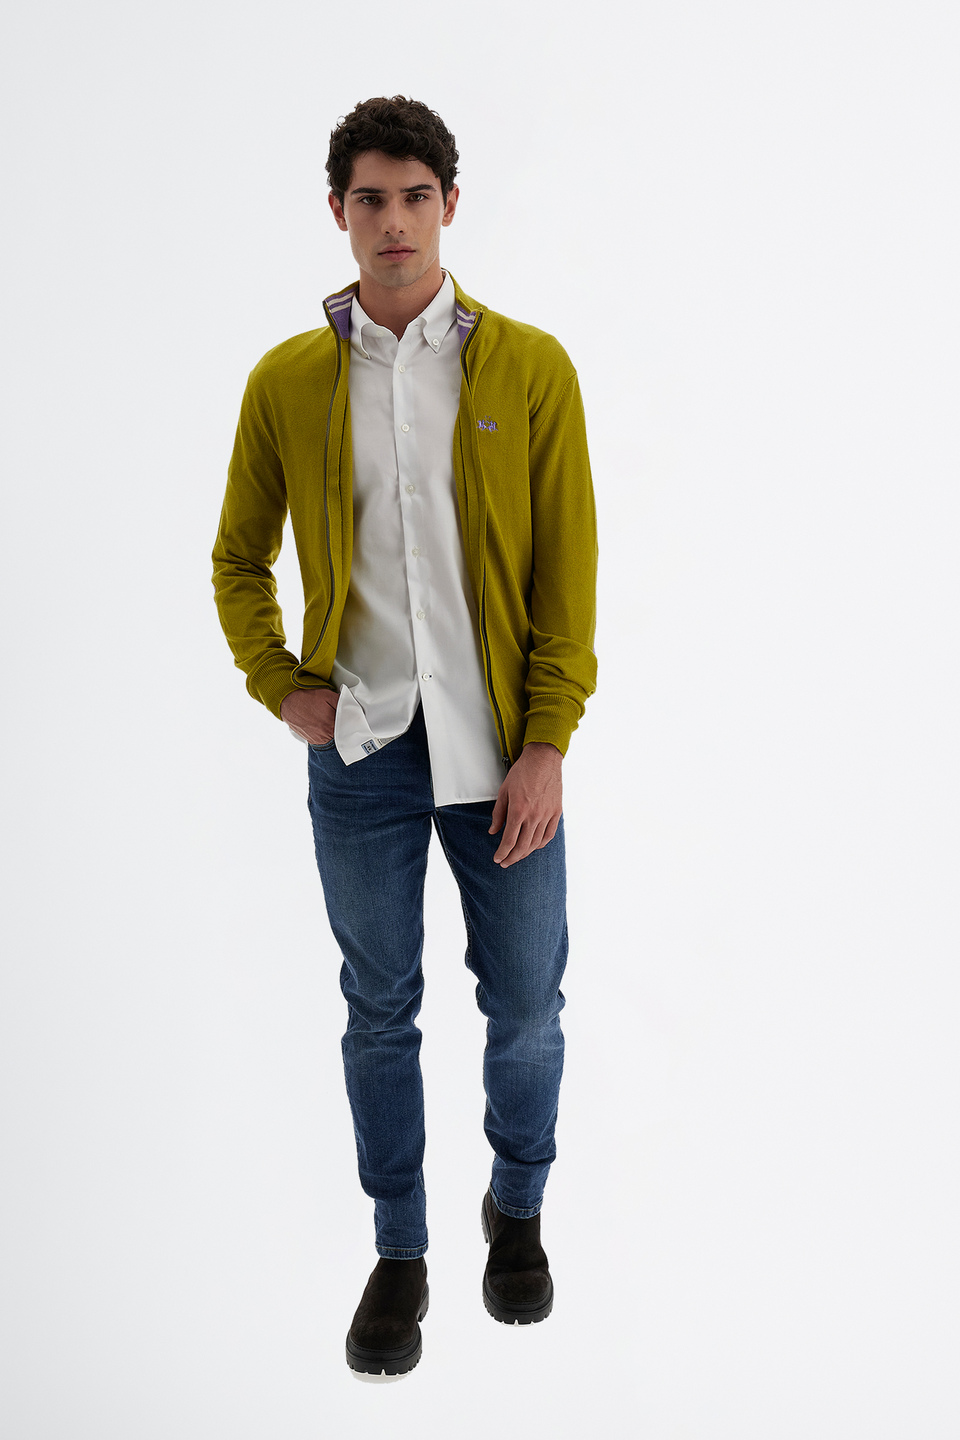 Men’s classic style long sleeve cotton shirt - Passion | La Martina - Official Online Shop